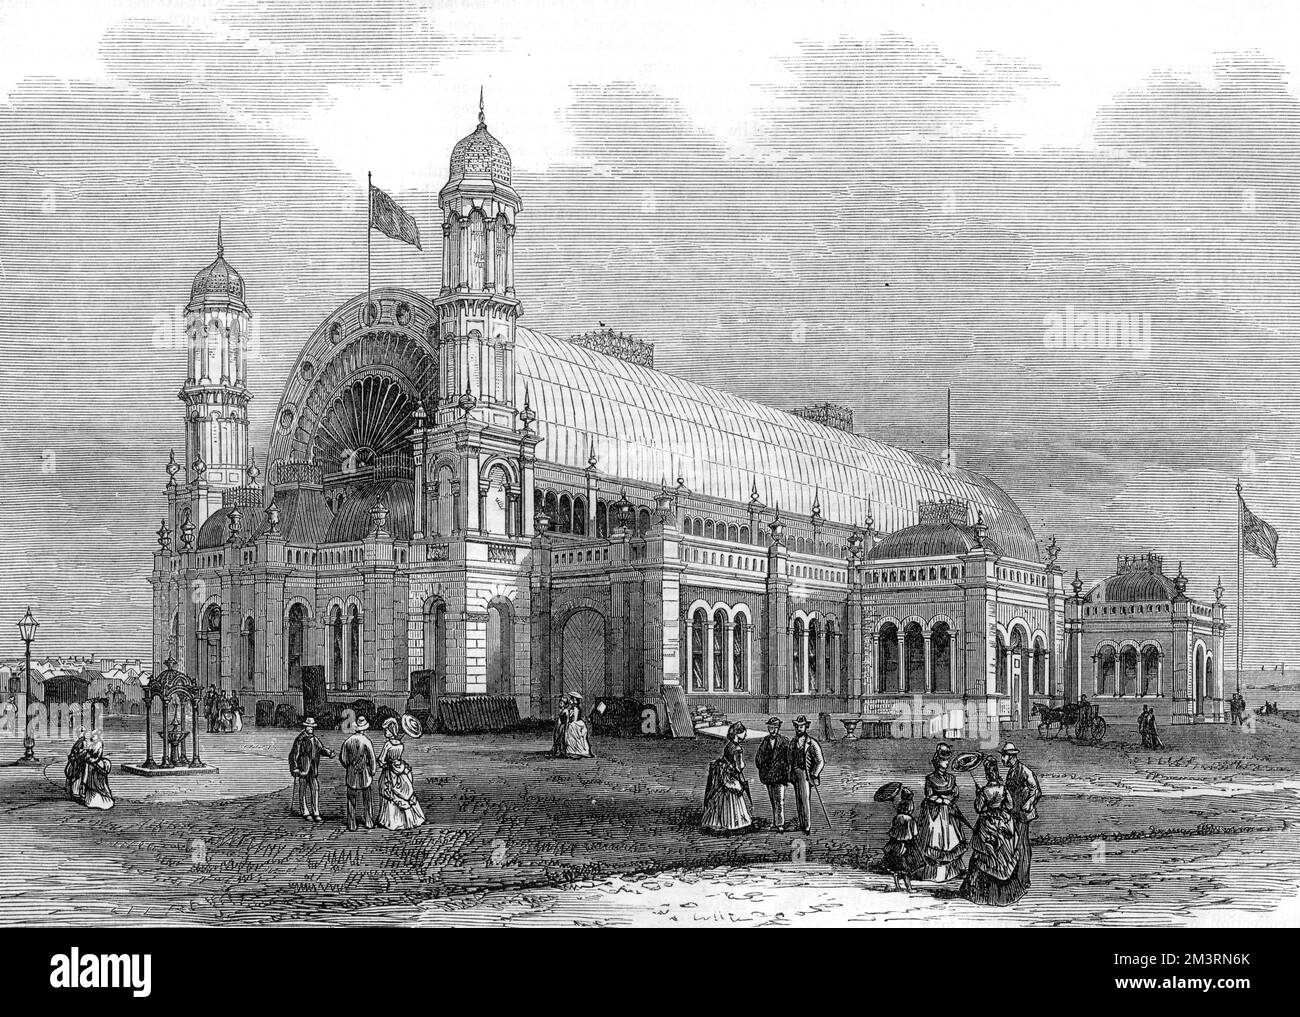 L'esterno del Sydney Exhibition Building, costruito nel Prince Alfred Park, Sydney, qui raffigurato nel 1872 all'epoca del New South Wales Agricultural Exhibition. Data: 1872 Foto Stock